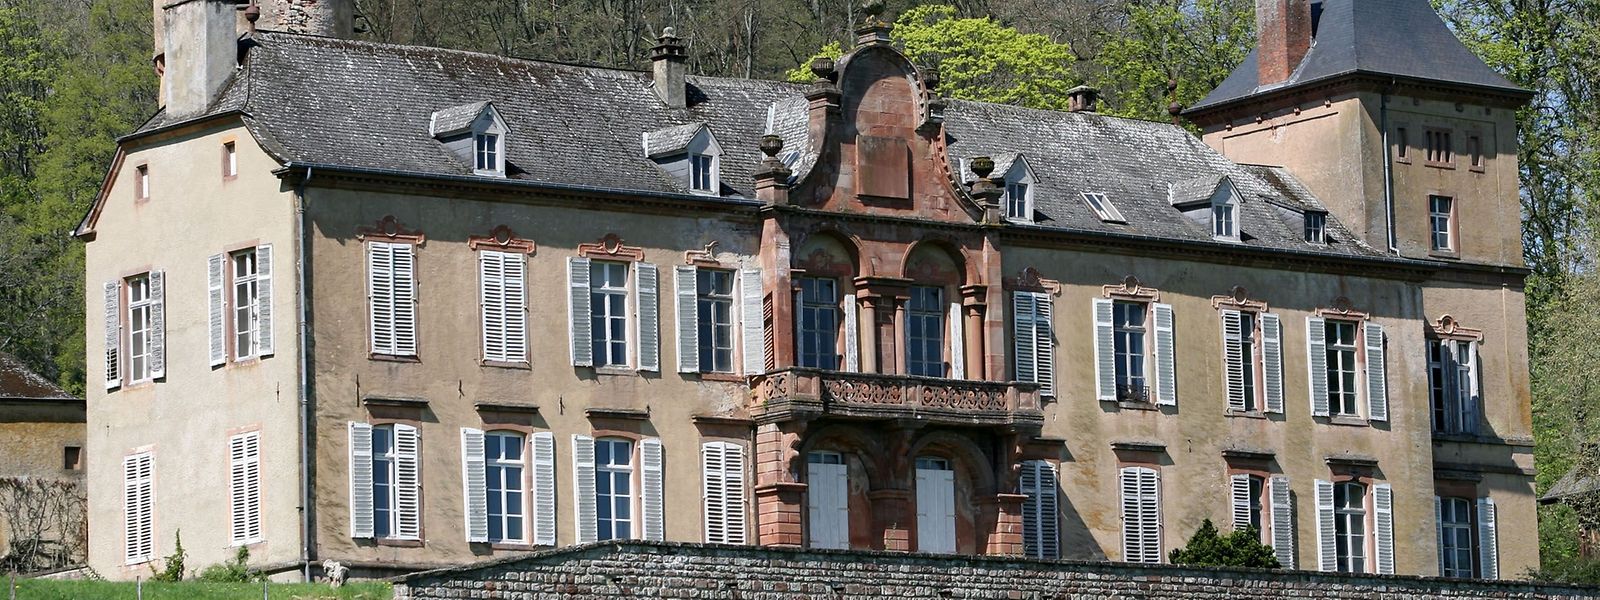 Deux tiers du prix de cession de la demeure et son parc reviendront directement à la Croix-Rouge luxembourgeoise.